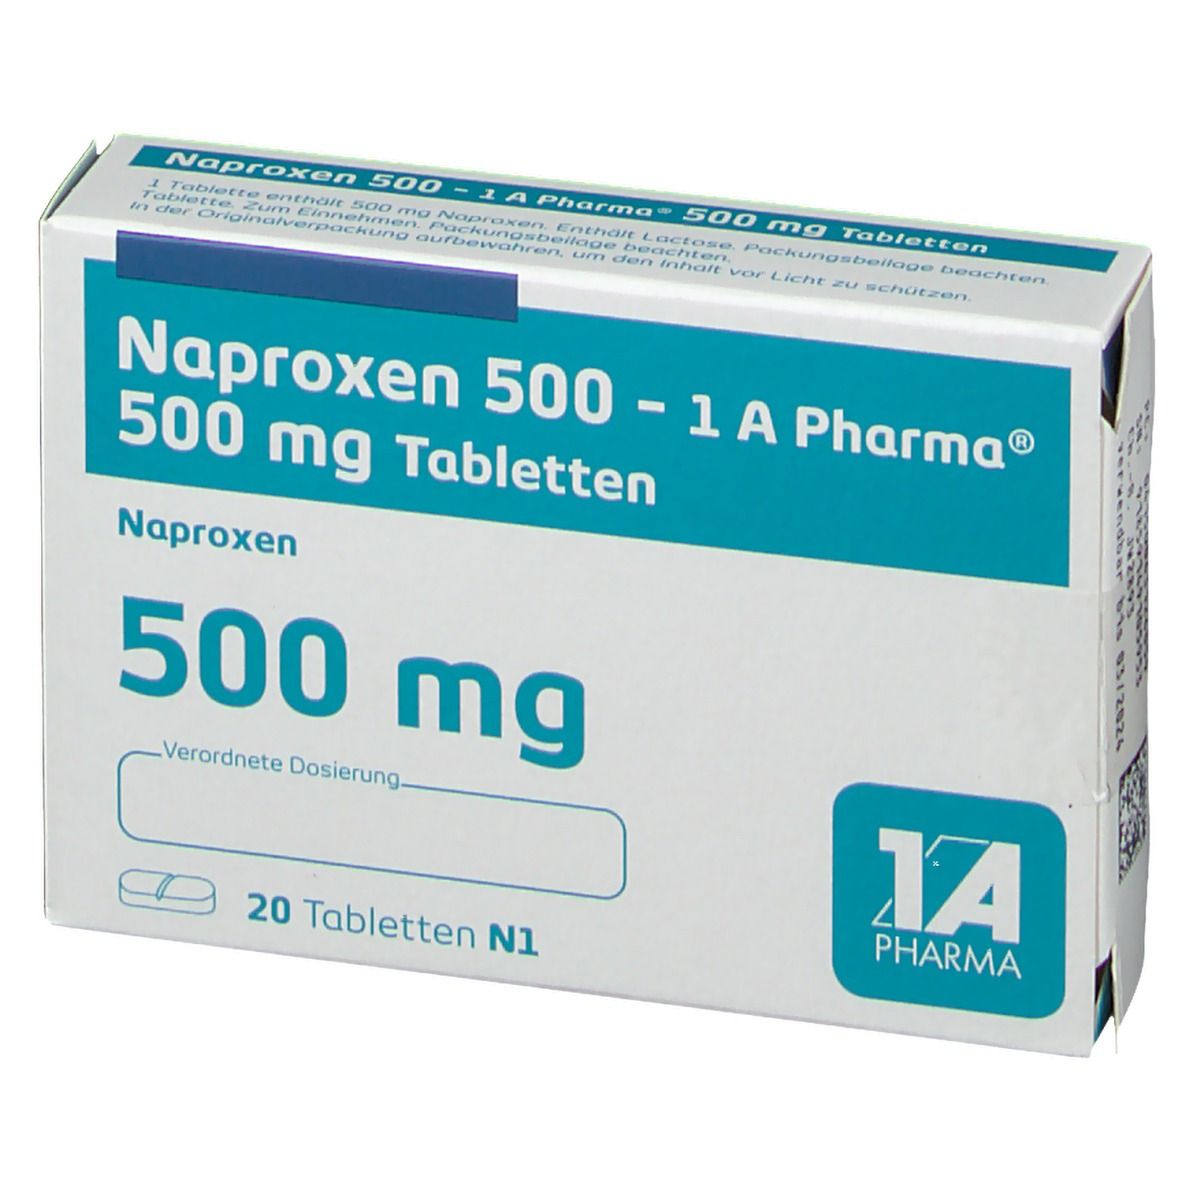 Naproxen 500 1A Pharma®